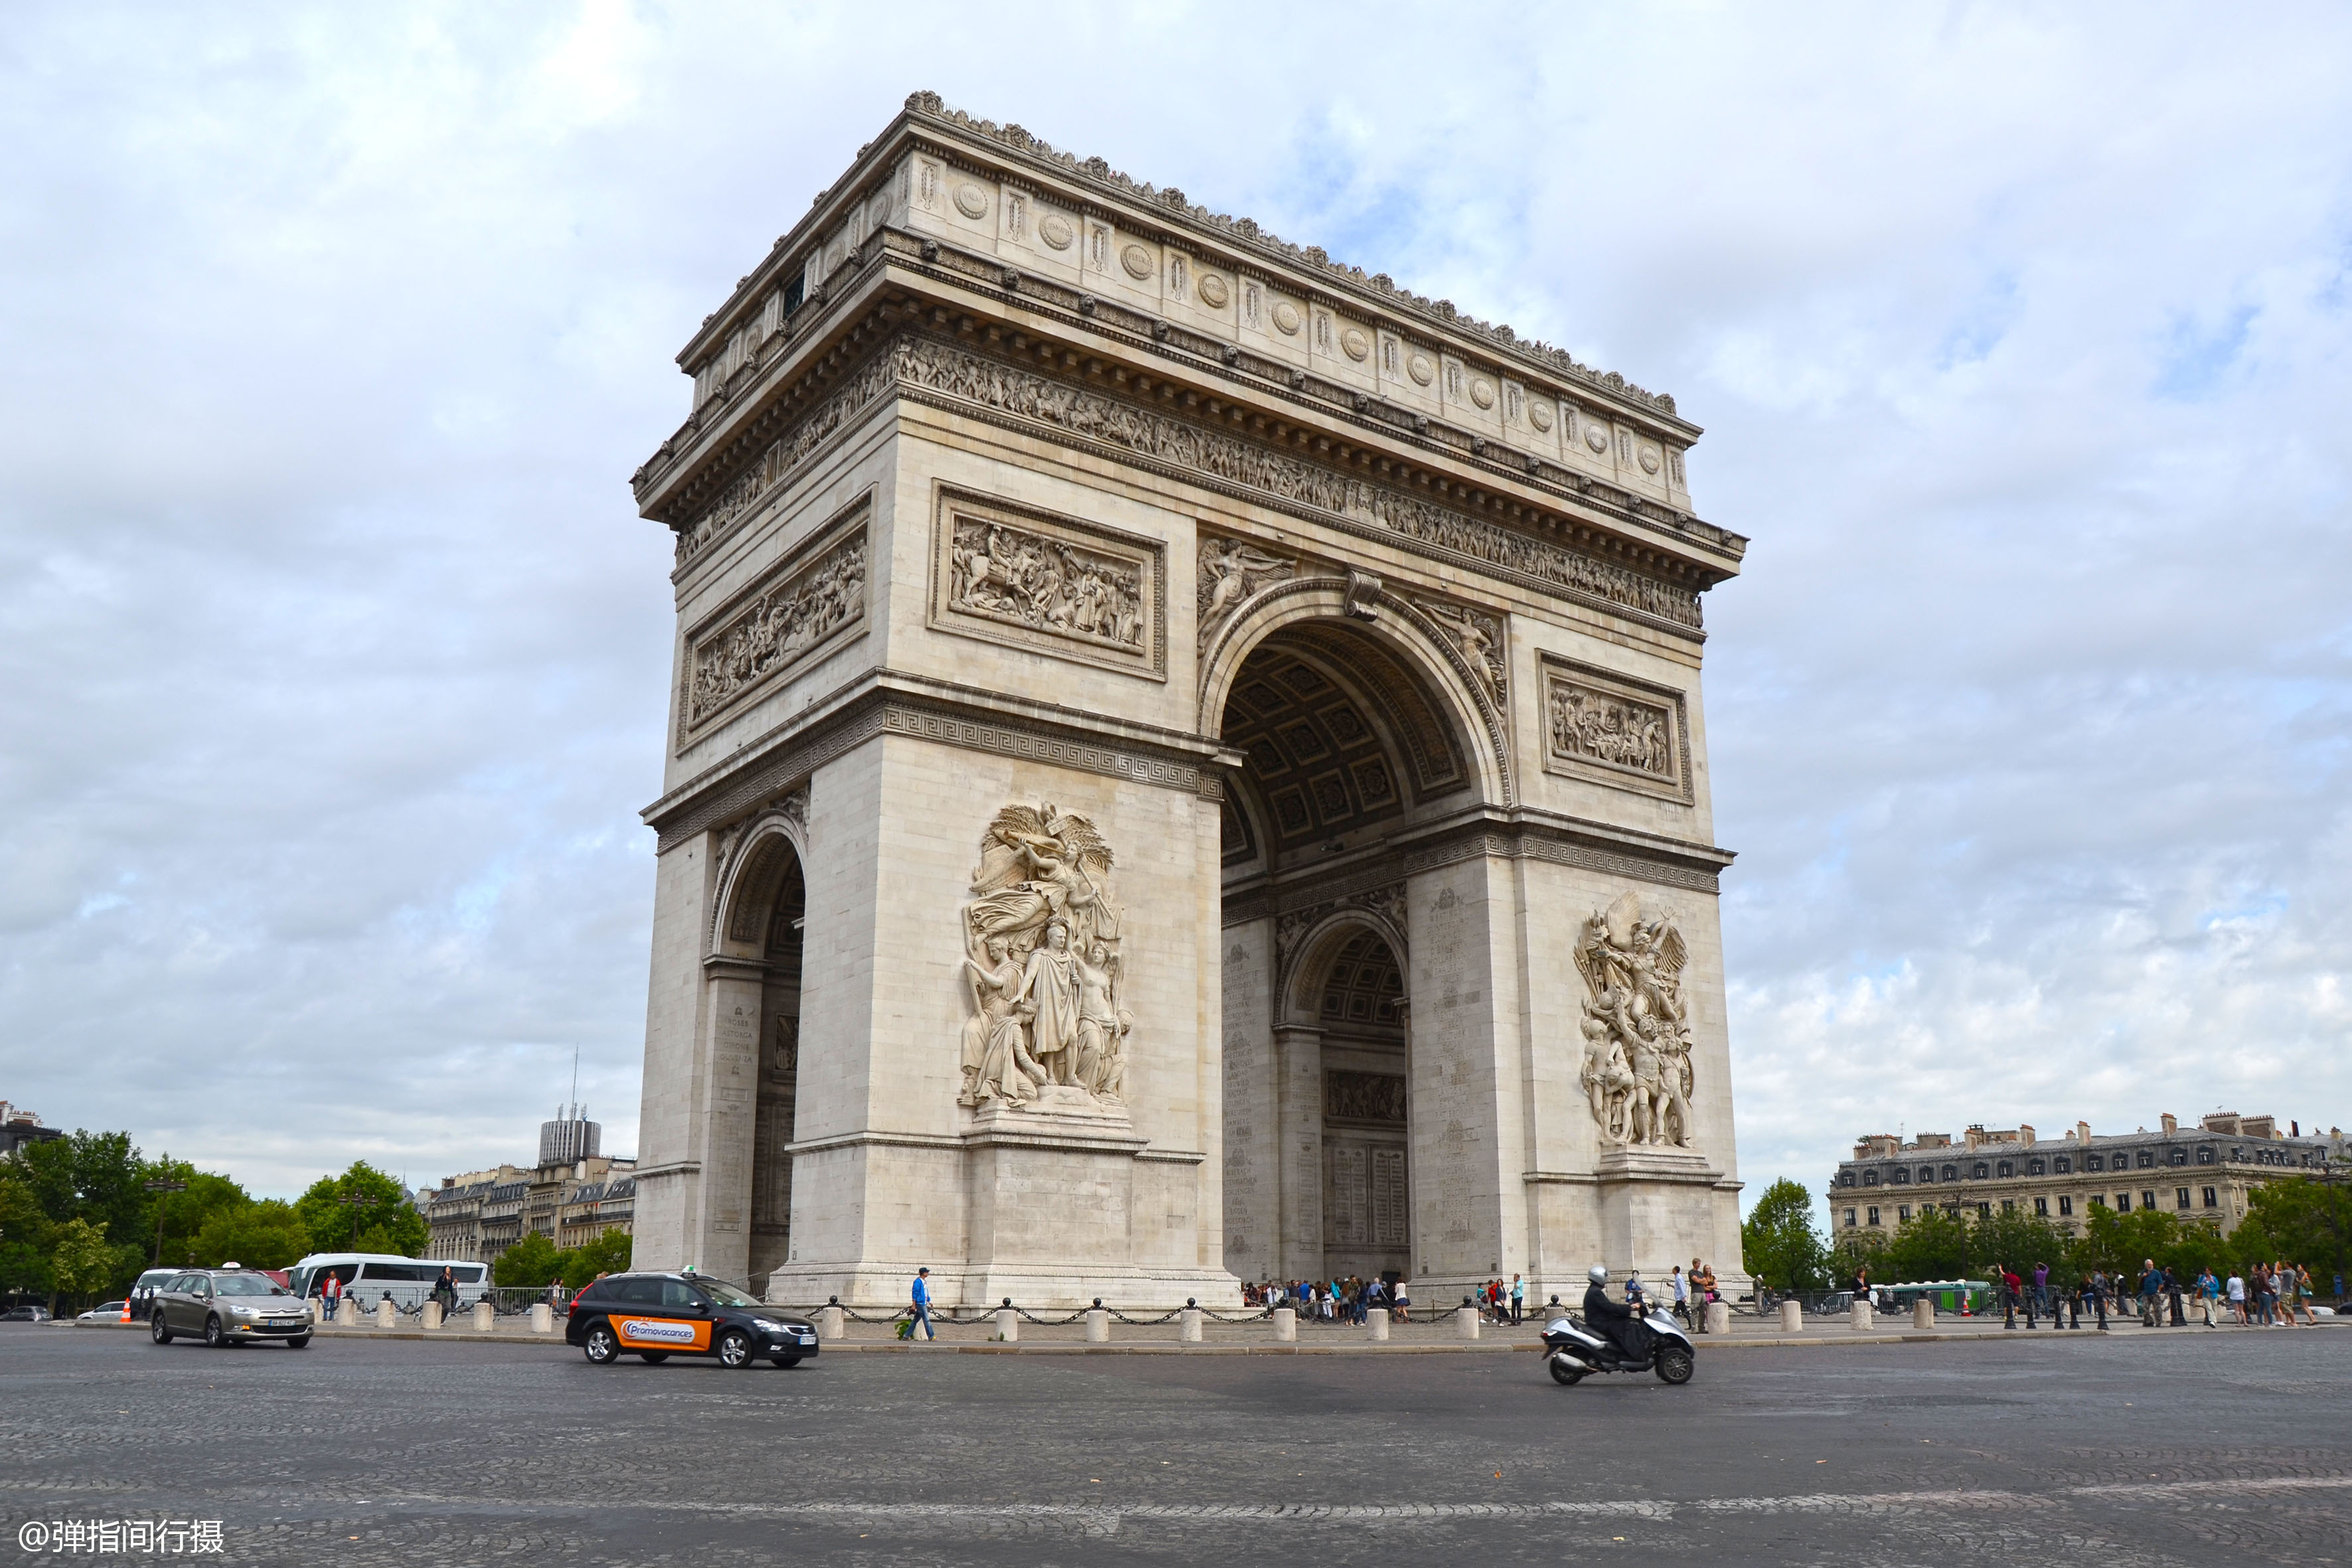 欧洲最大的凯旋门,成法国著名地标建筑,堪称"浮雕艺术教科书"